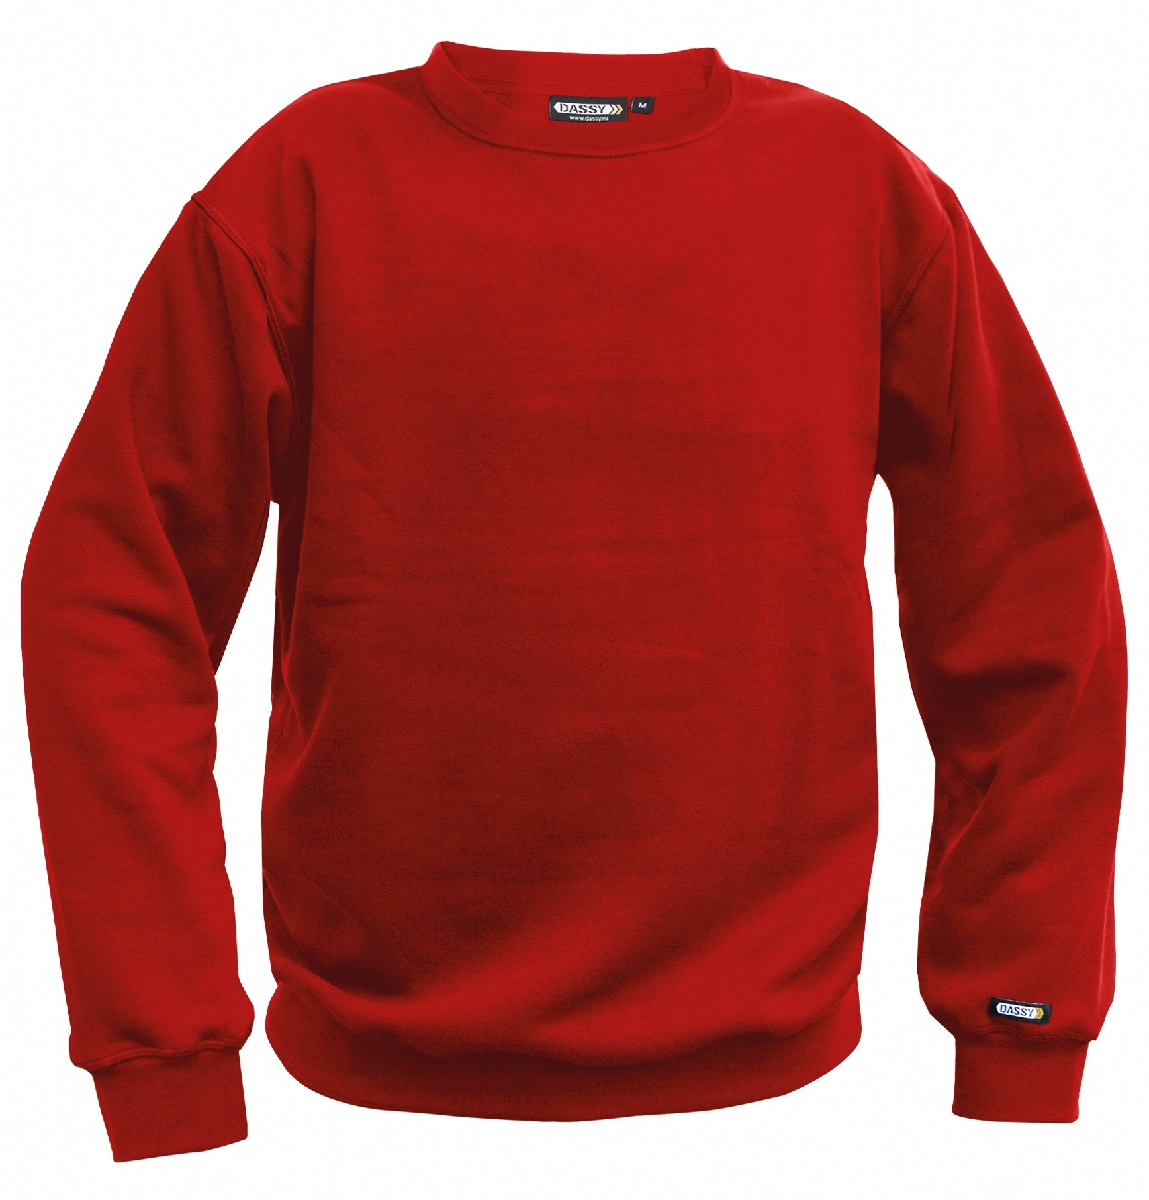 Modernes Sweatshirt mit eigenem Firmenlogo oder Firmennamen